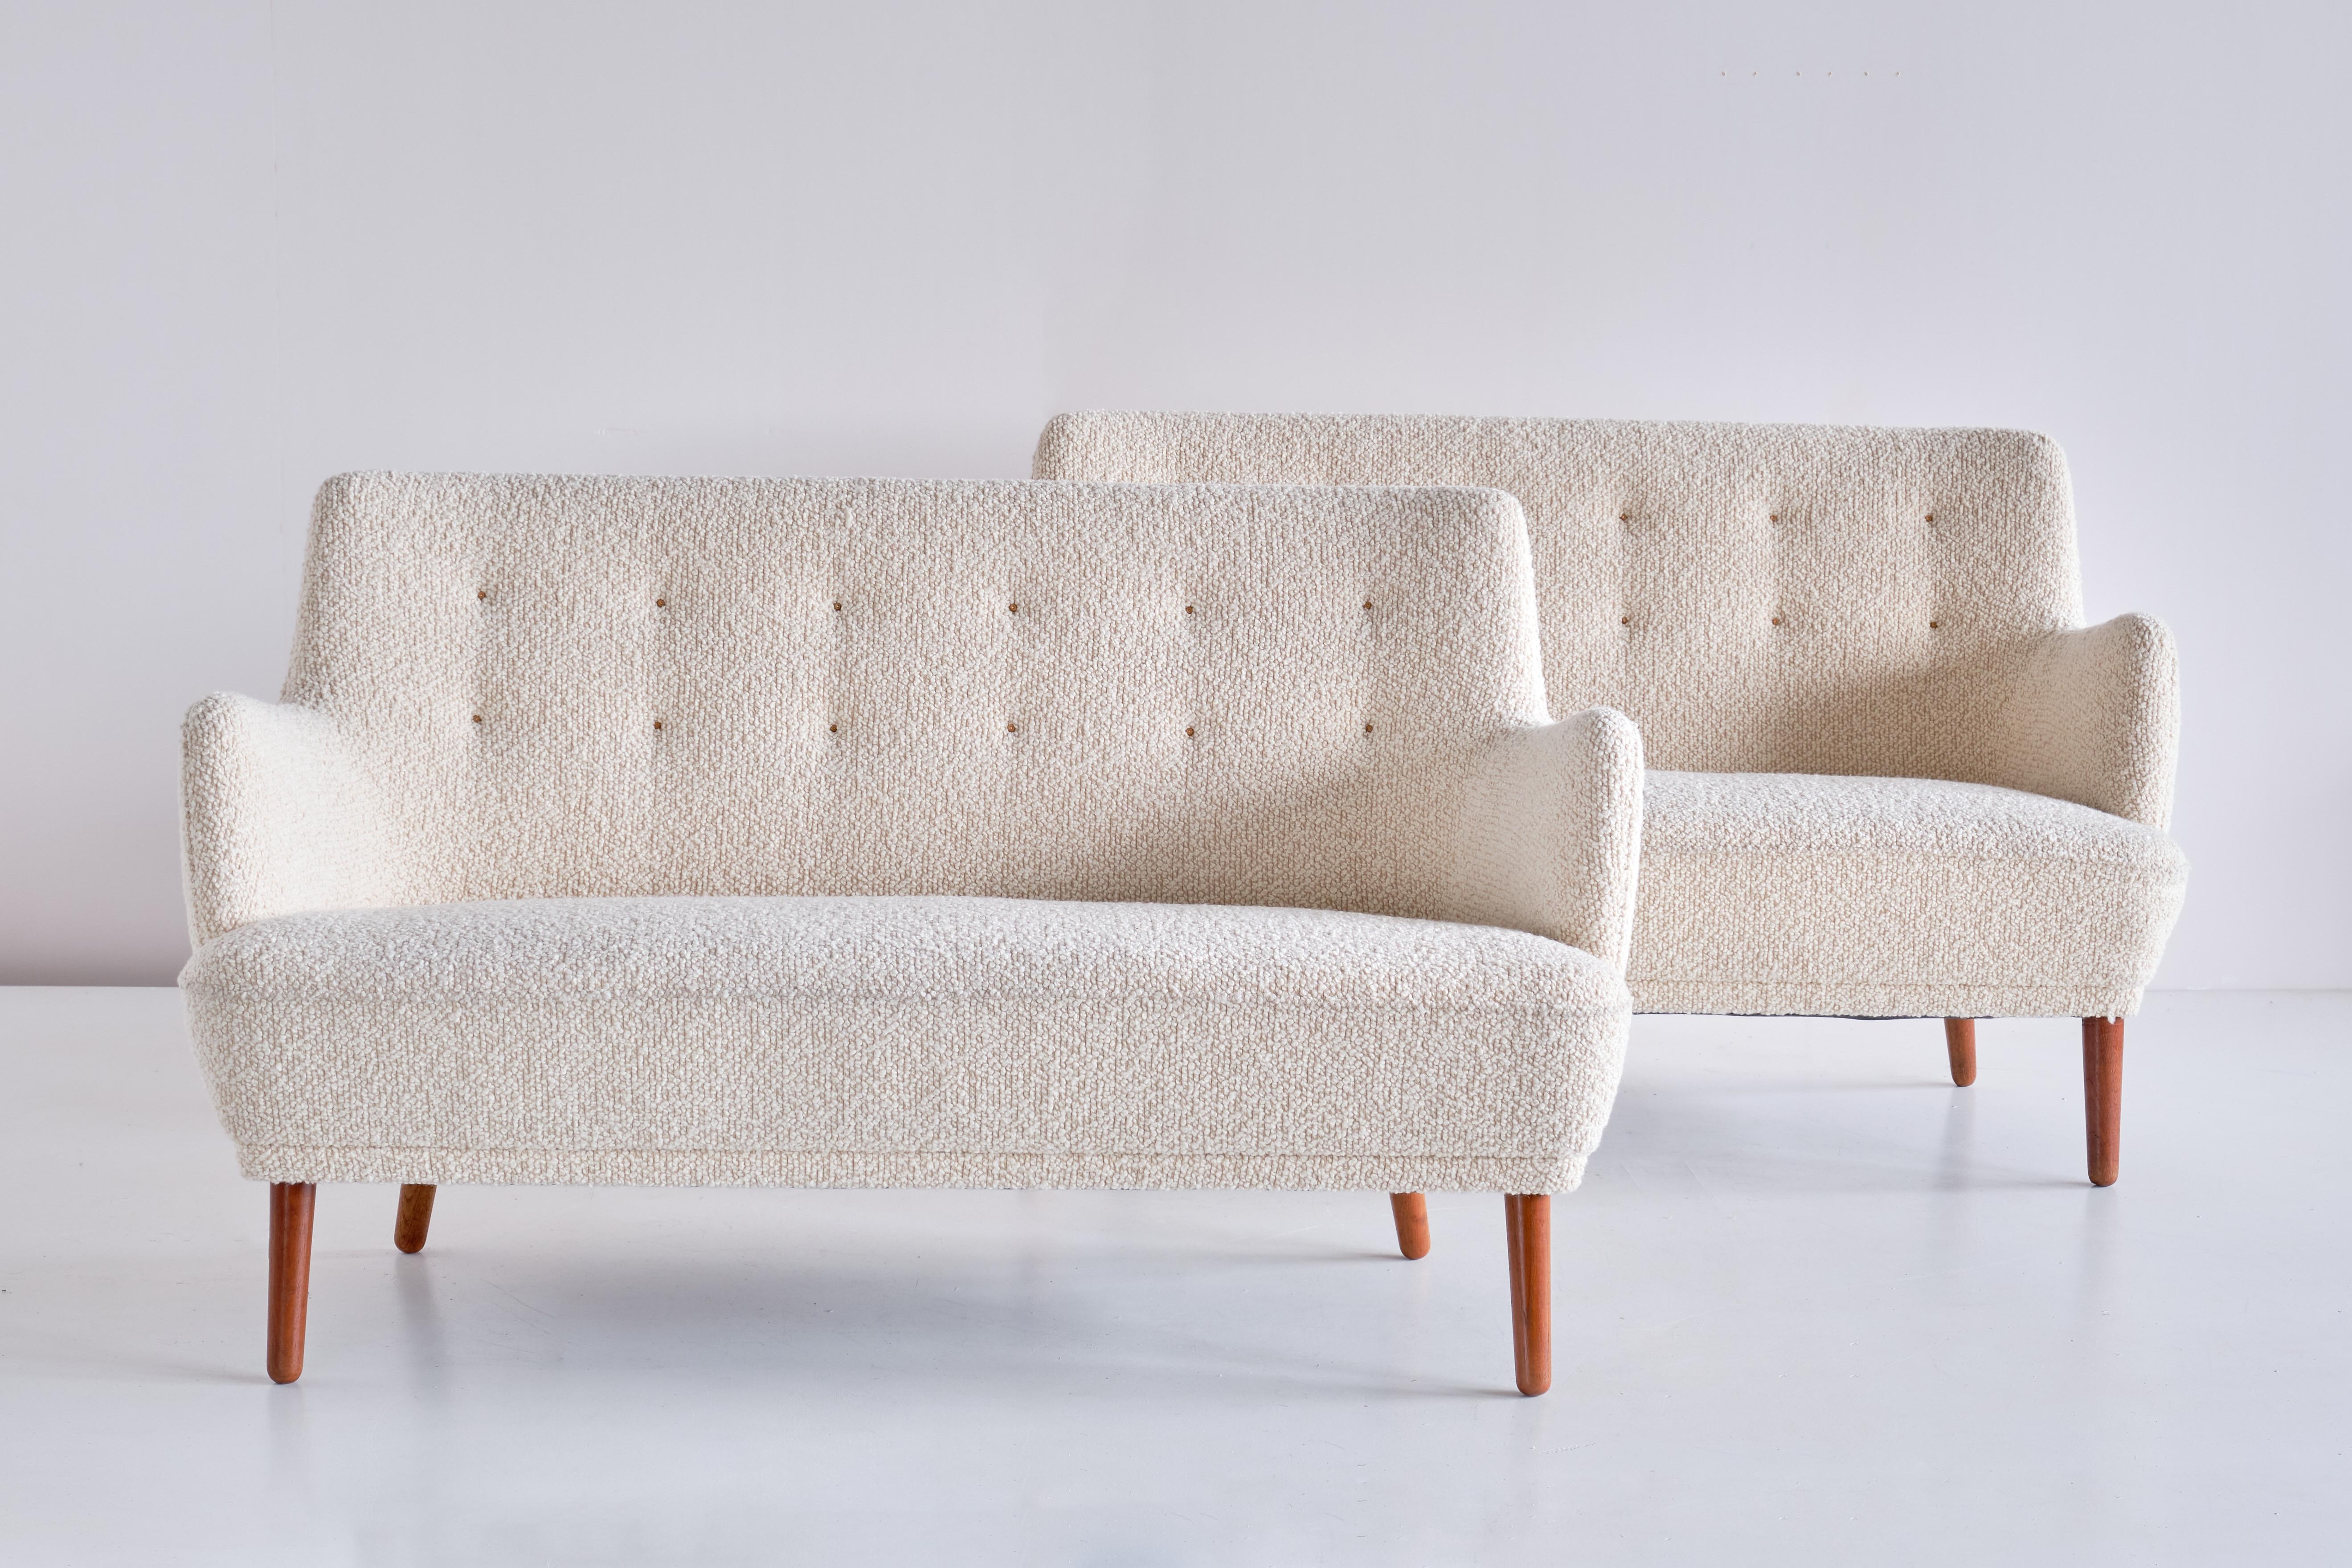 Dieses außergewöhnlich seltene Zweisitzer-Sofa wurde von Tove & Edvard Kindt-Larsen entworfen und von dem Tischlermeister Gustav Bertelsen in den frühen 1950er Jahren hergestellt. Das Sofa wurde neu mit einem elfenbeinfarbenen, weißen